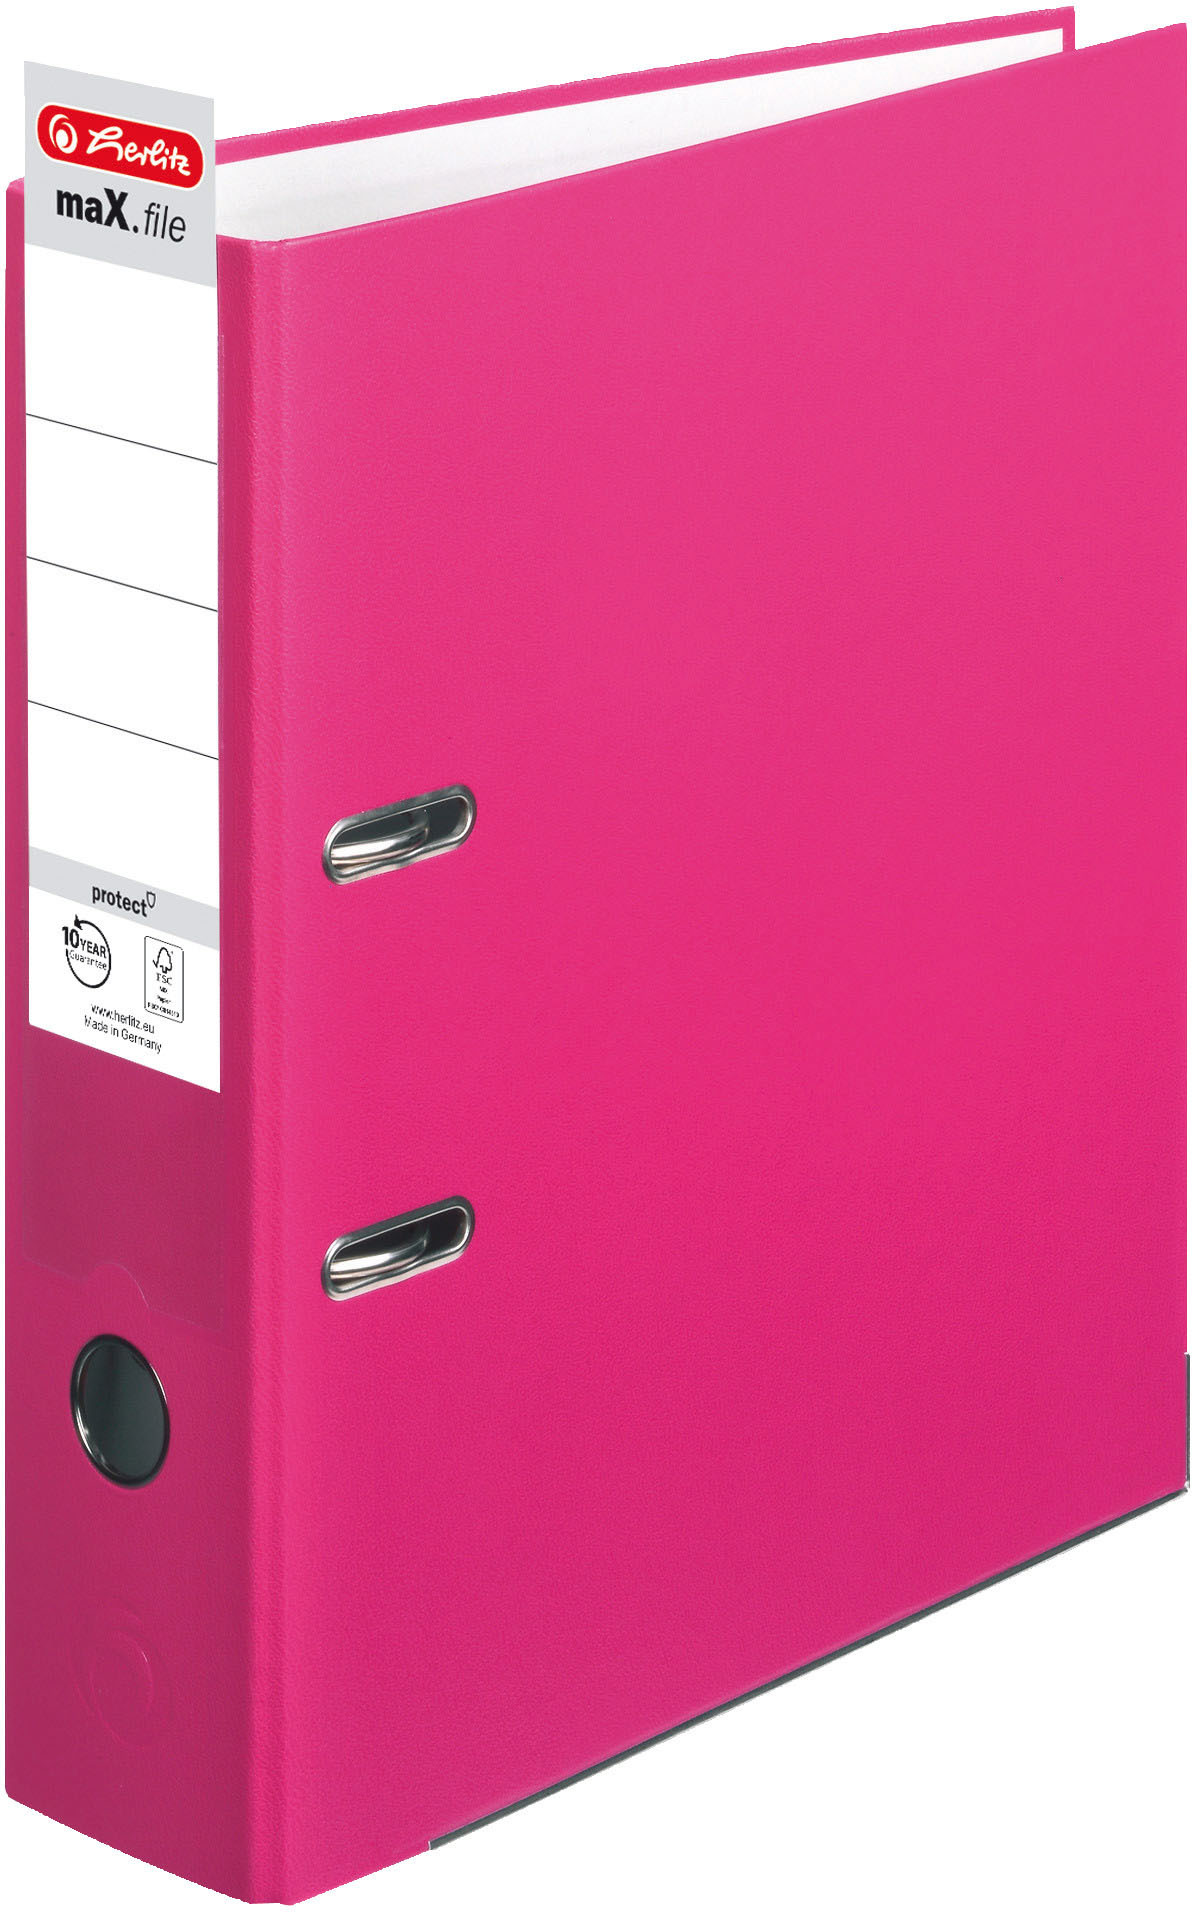 HERLITZ Classeur maX.file 8cm 11053683 pink A4